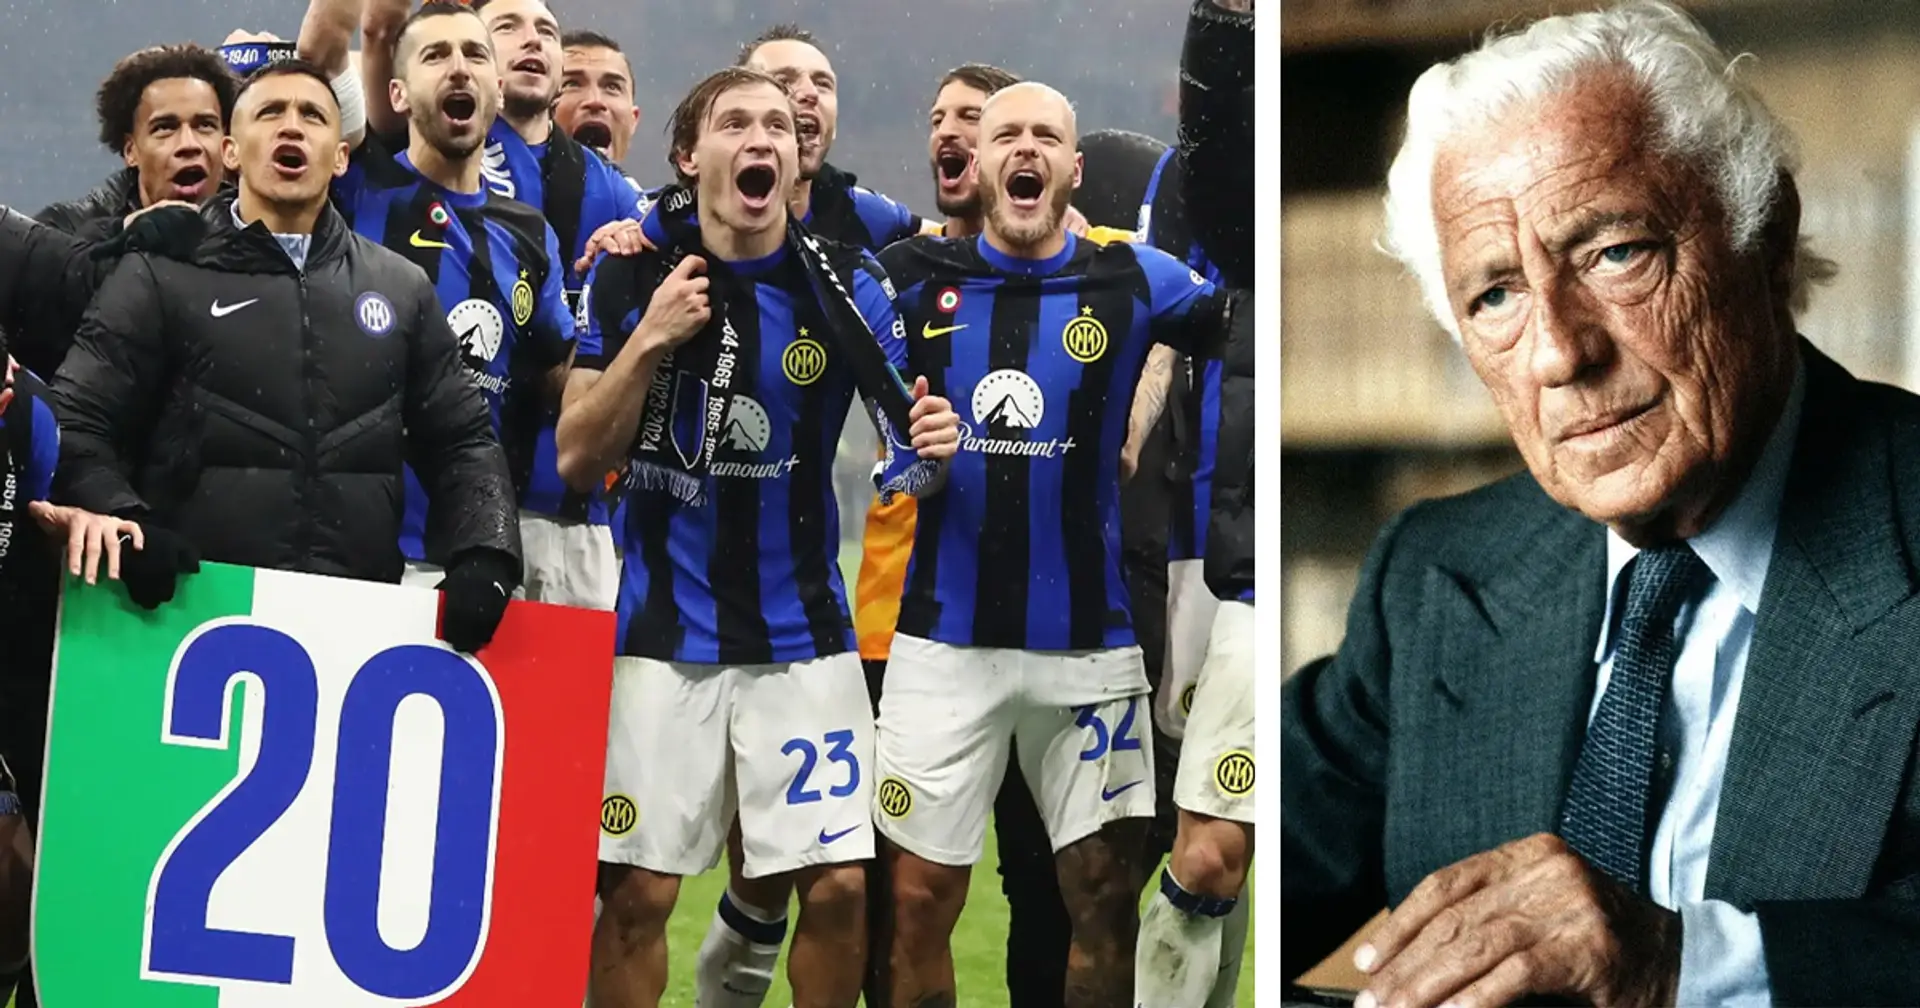 La frase iconica di Gianni Agnelli spiega perché lo scudetto dell'Inter non è storico: "Con le milanesi la rivalità è una"